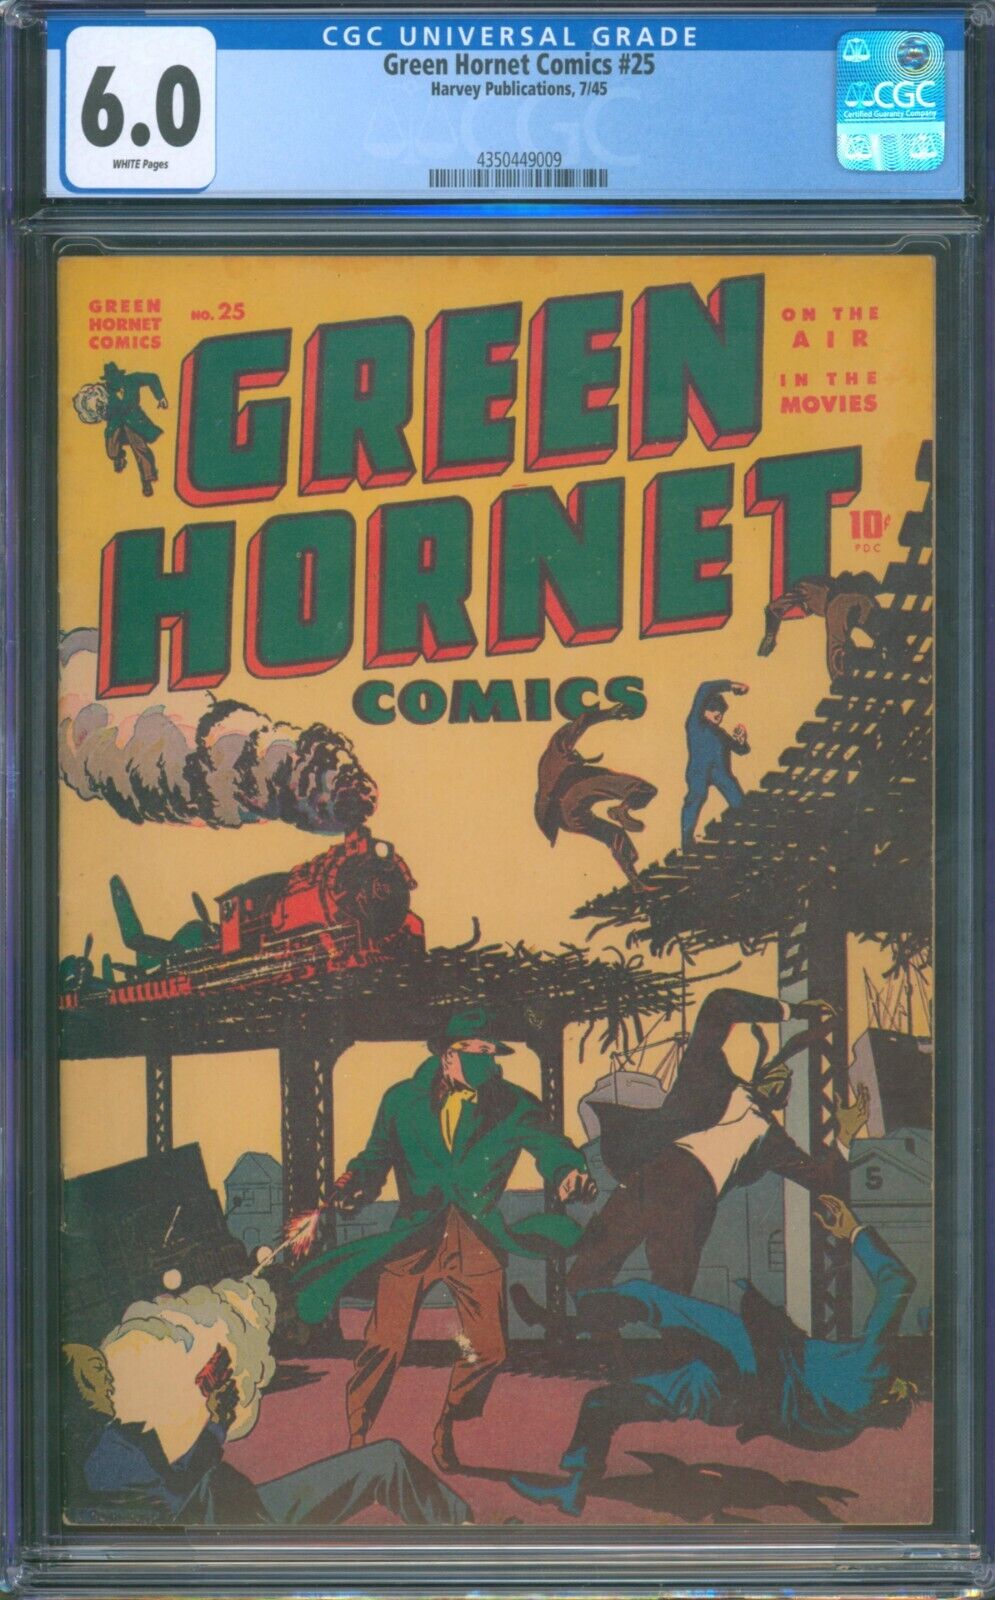 Green Hornet Comics #25 (1945) ⭐ CGC 6.0 WHITE PG ⭐ Rare Golden Age Harvey Comic